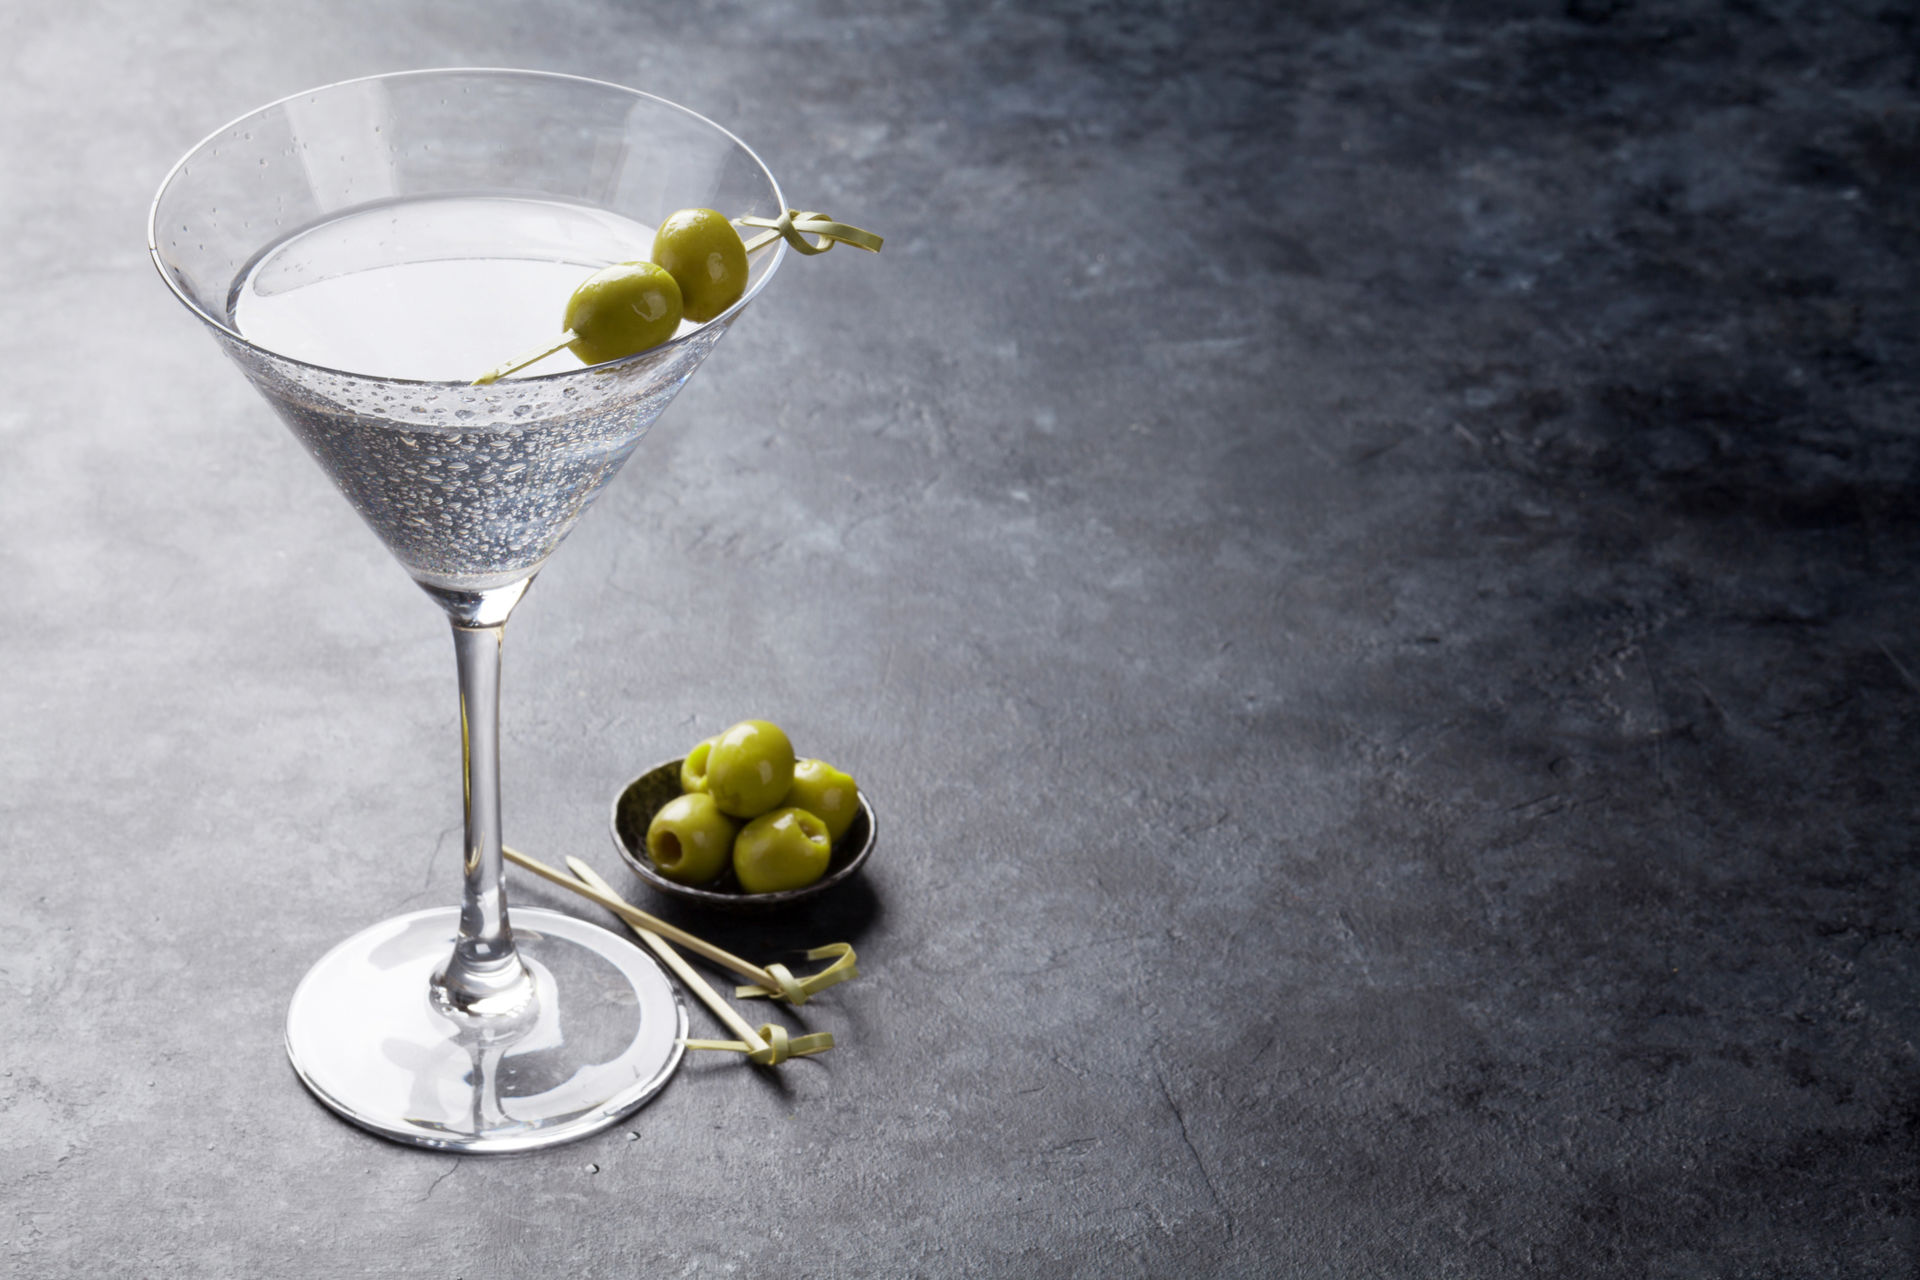 Martini bianco richtig servieren